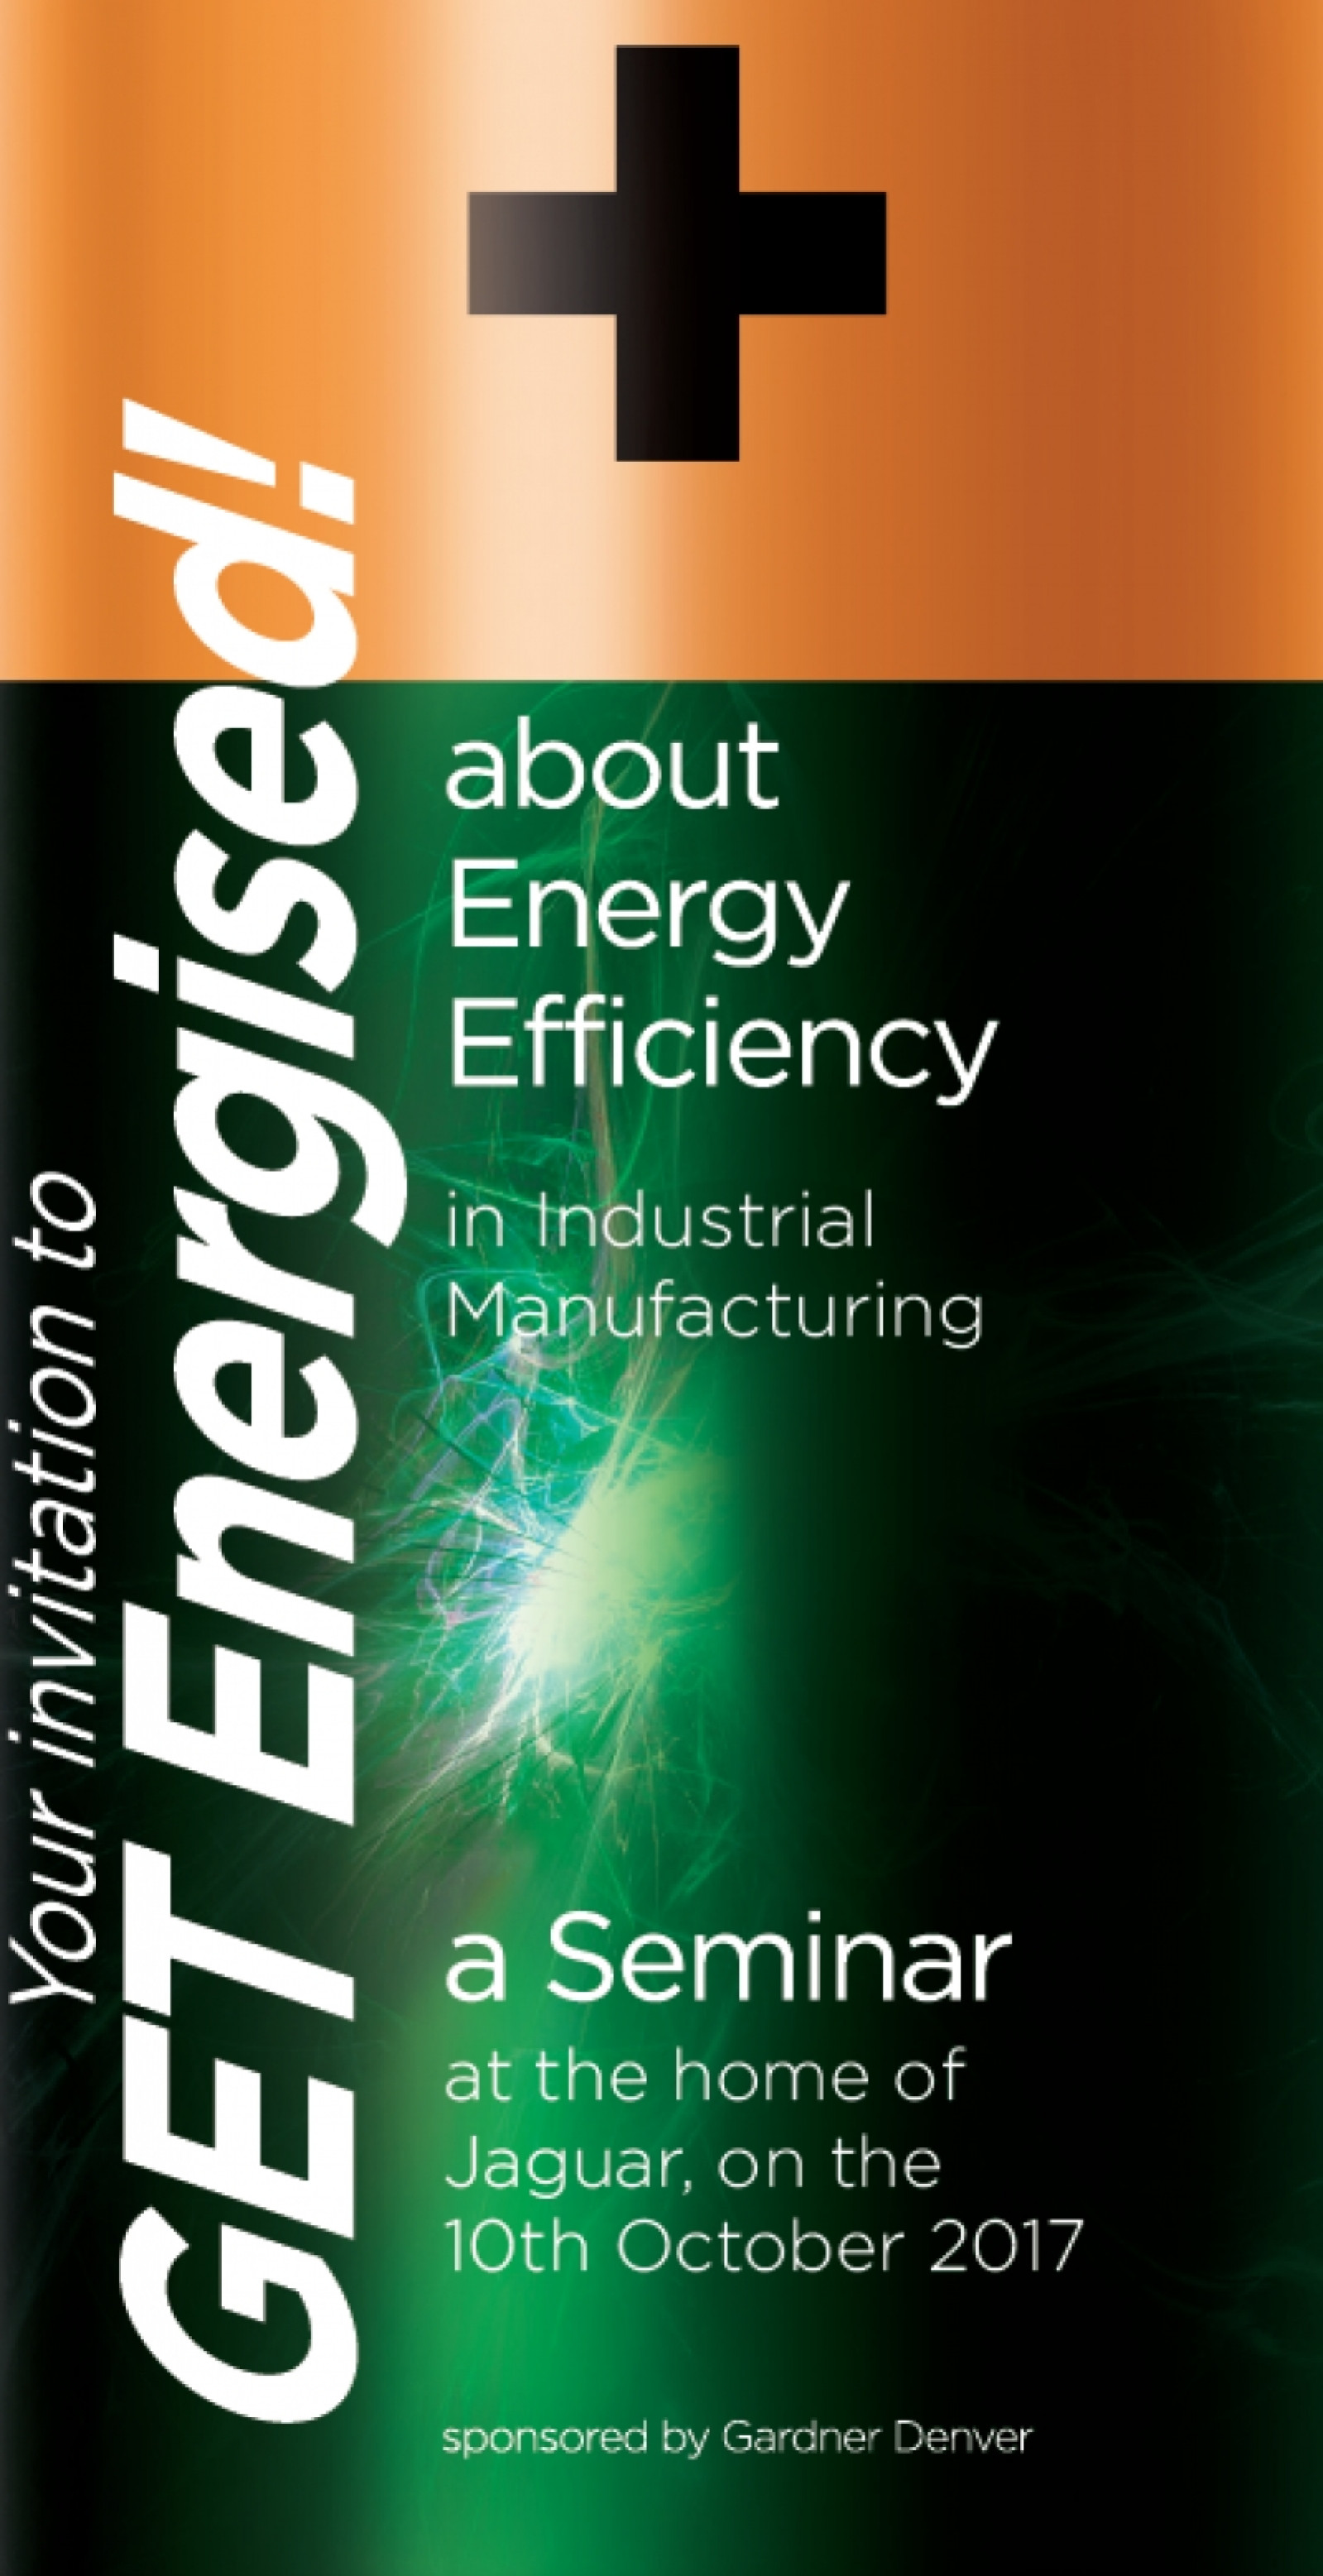 Free Energy Efficiency Seminar - Jaguar